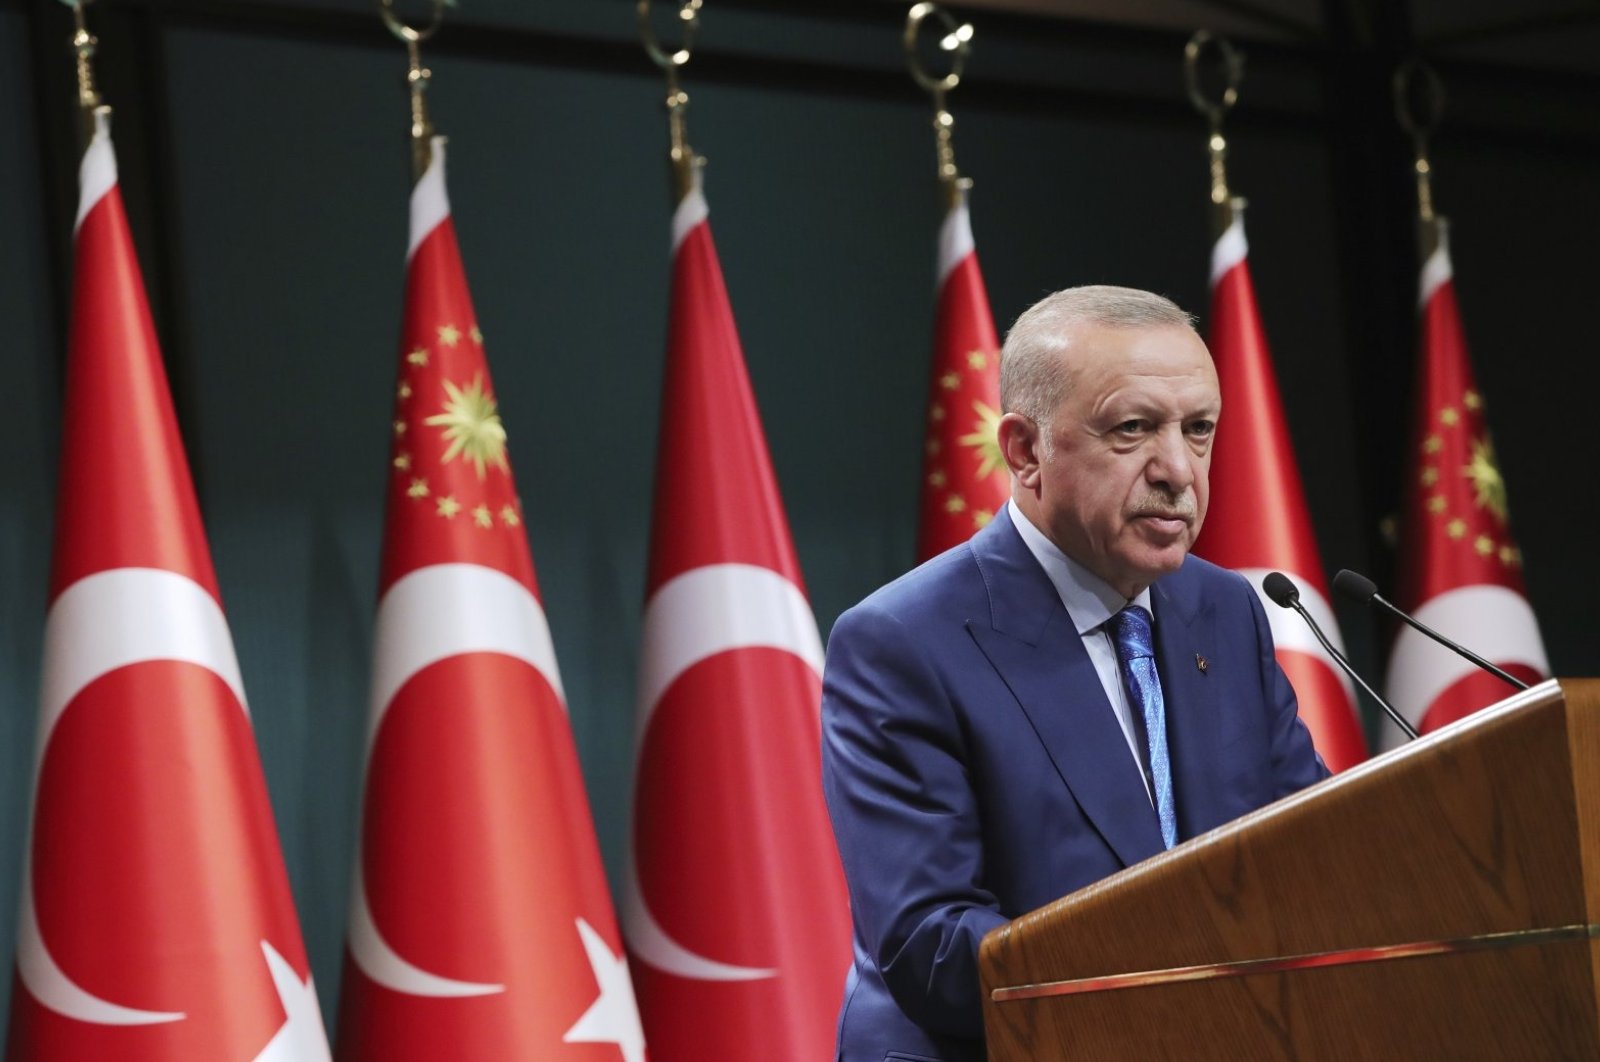 Erdoğan, Bukele El Salvador akan bertemu di Turki untuk meningkatkan kerja sama